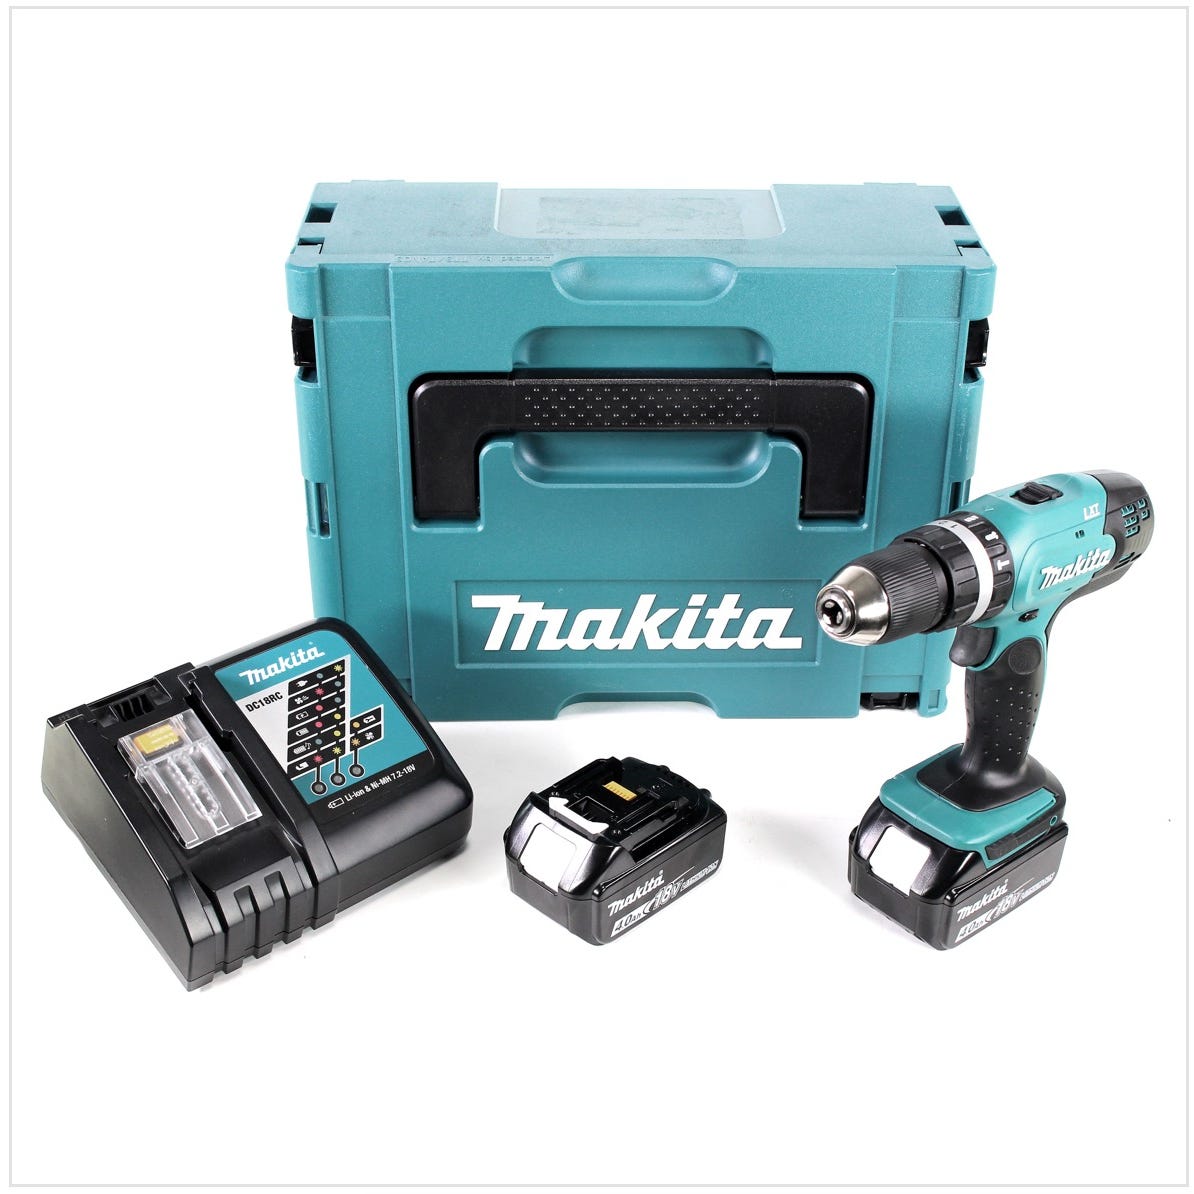 Makita DHP 453 RMJ 18 V Perceuse visseuse à percussion sans fil avec boîtier Makpac + 2x Batteries BL 1840 4,0 Ah + Chargeur DC18RC 0